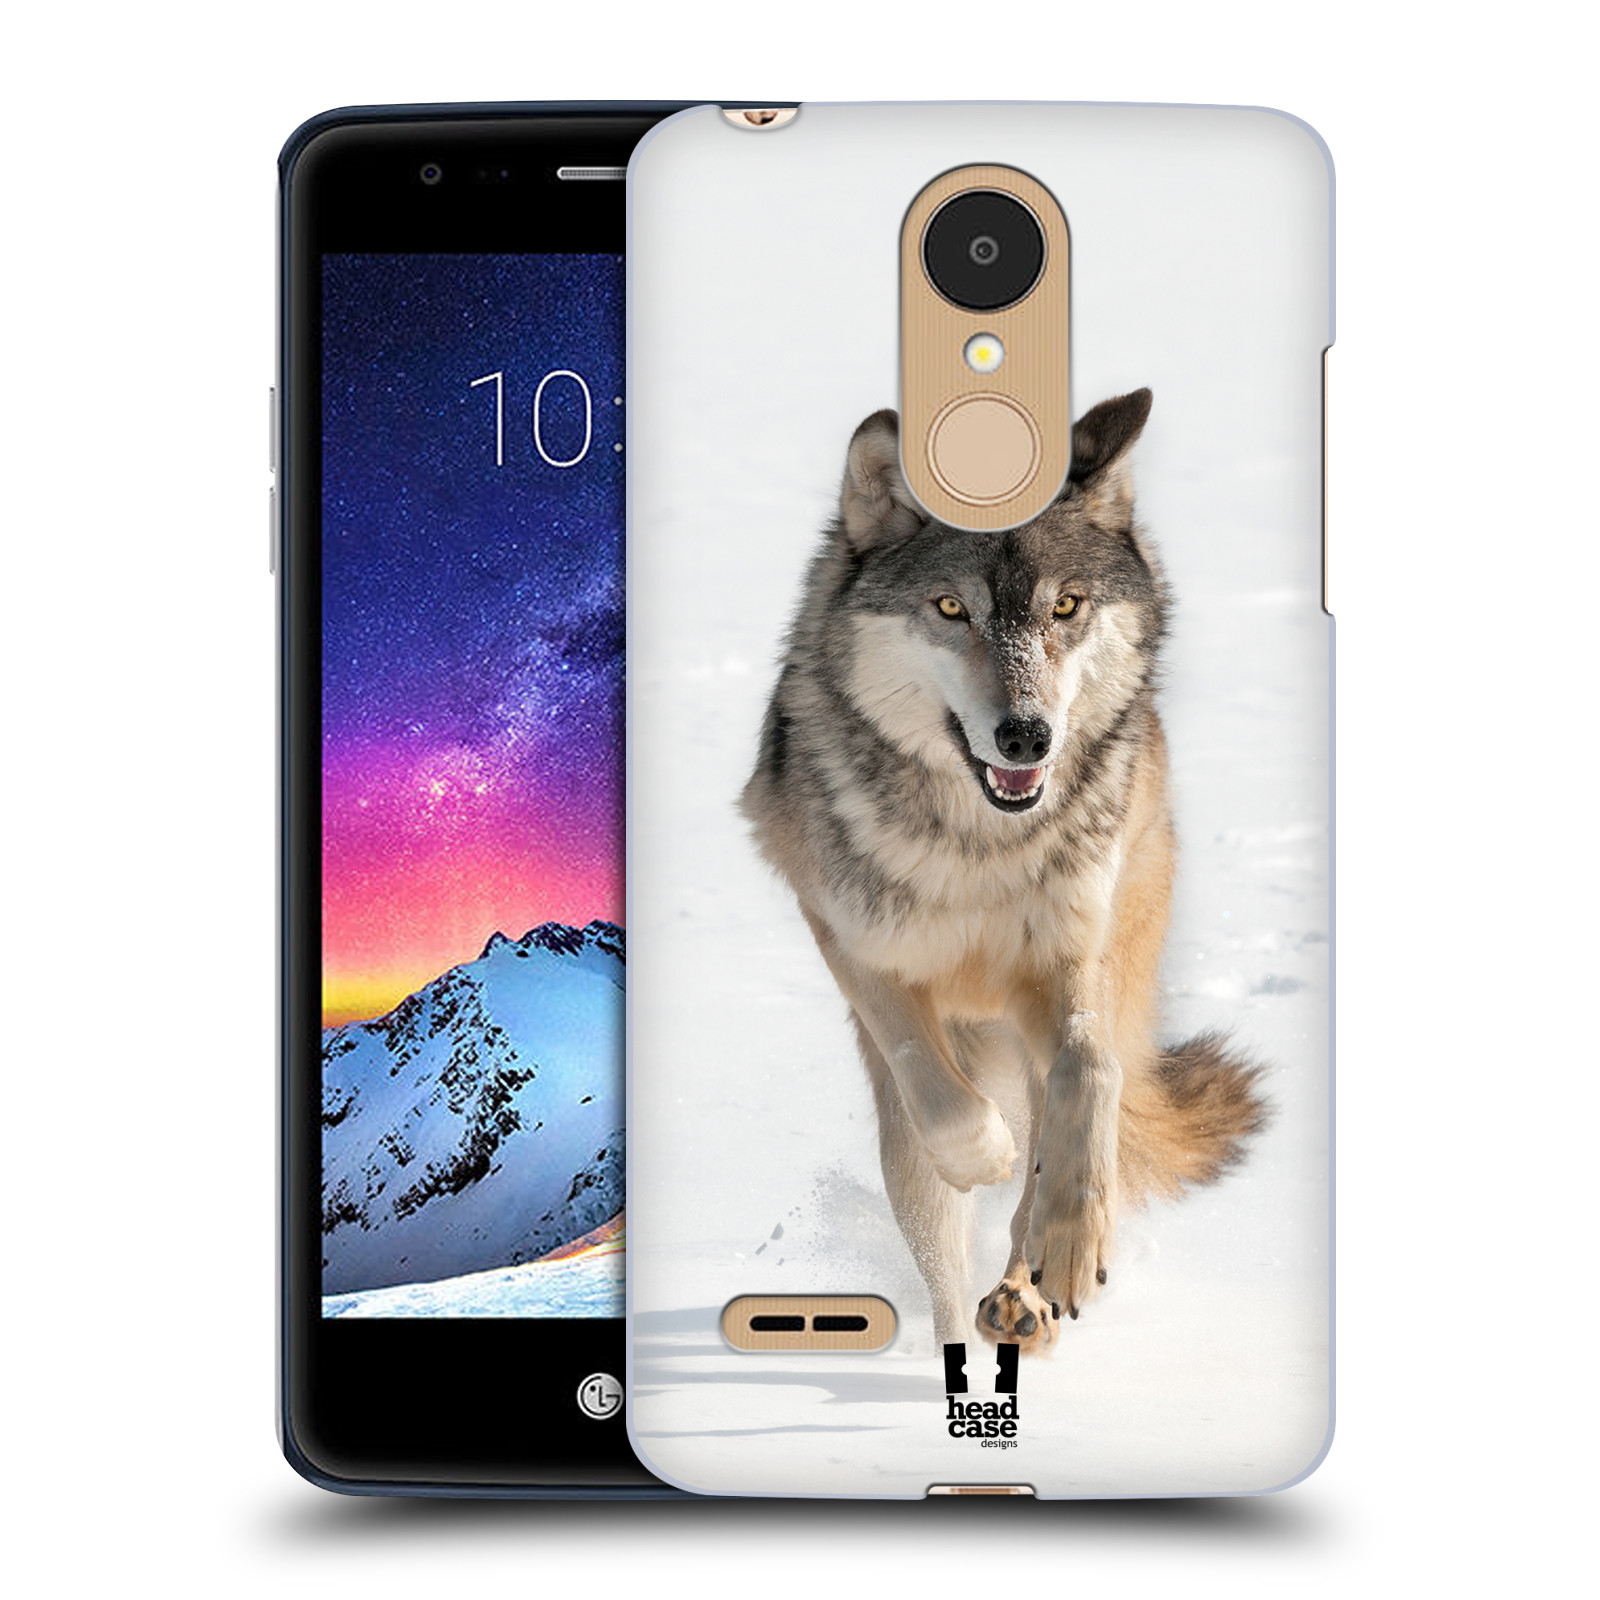 HEAD CASE plastový obal na mobil LG K9 / K8 2018 vzor Divočina, Divoký život a zvířata foto BĚŽÍCÍ VLK